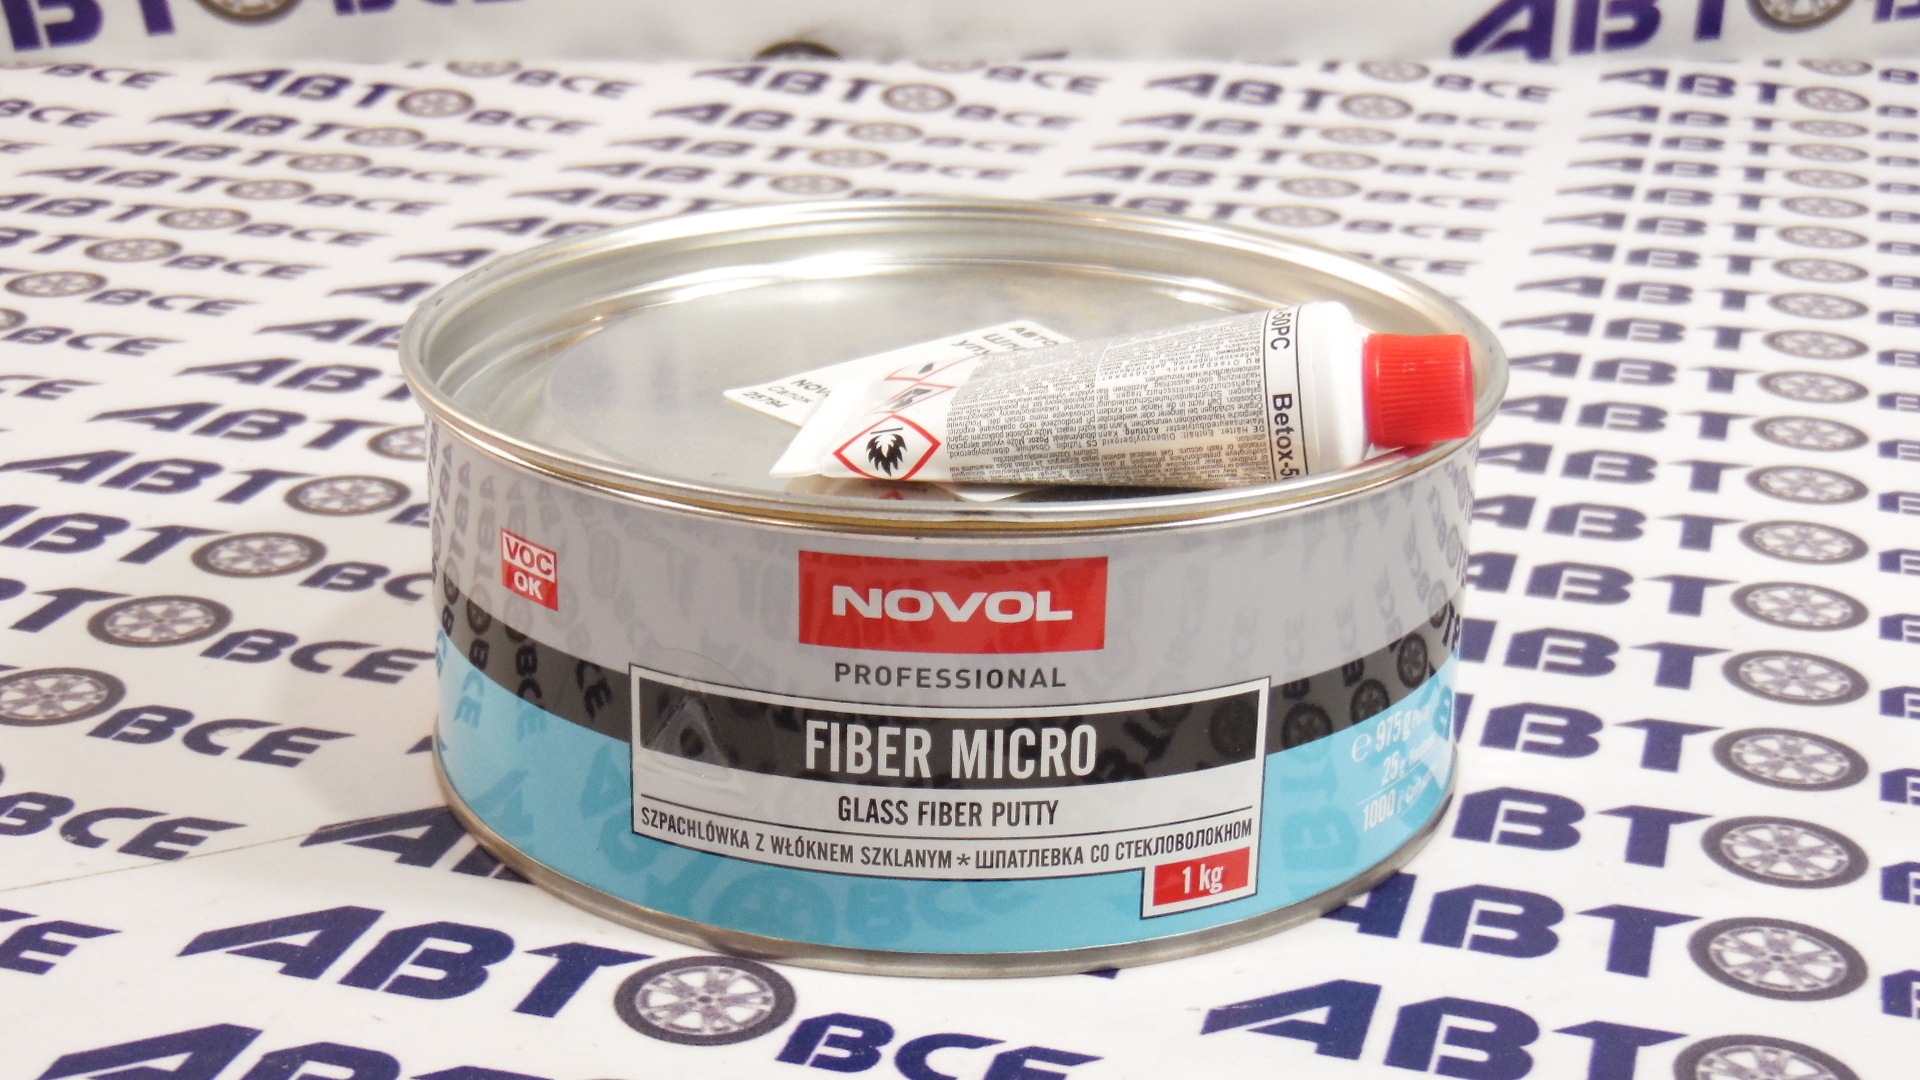 Шпатлевка со стекло улучшенная 1.0 кг (Micro Fiber) NOVOL